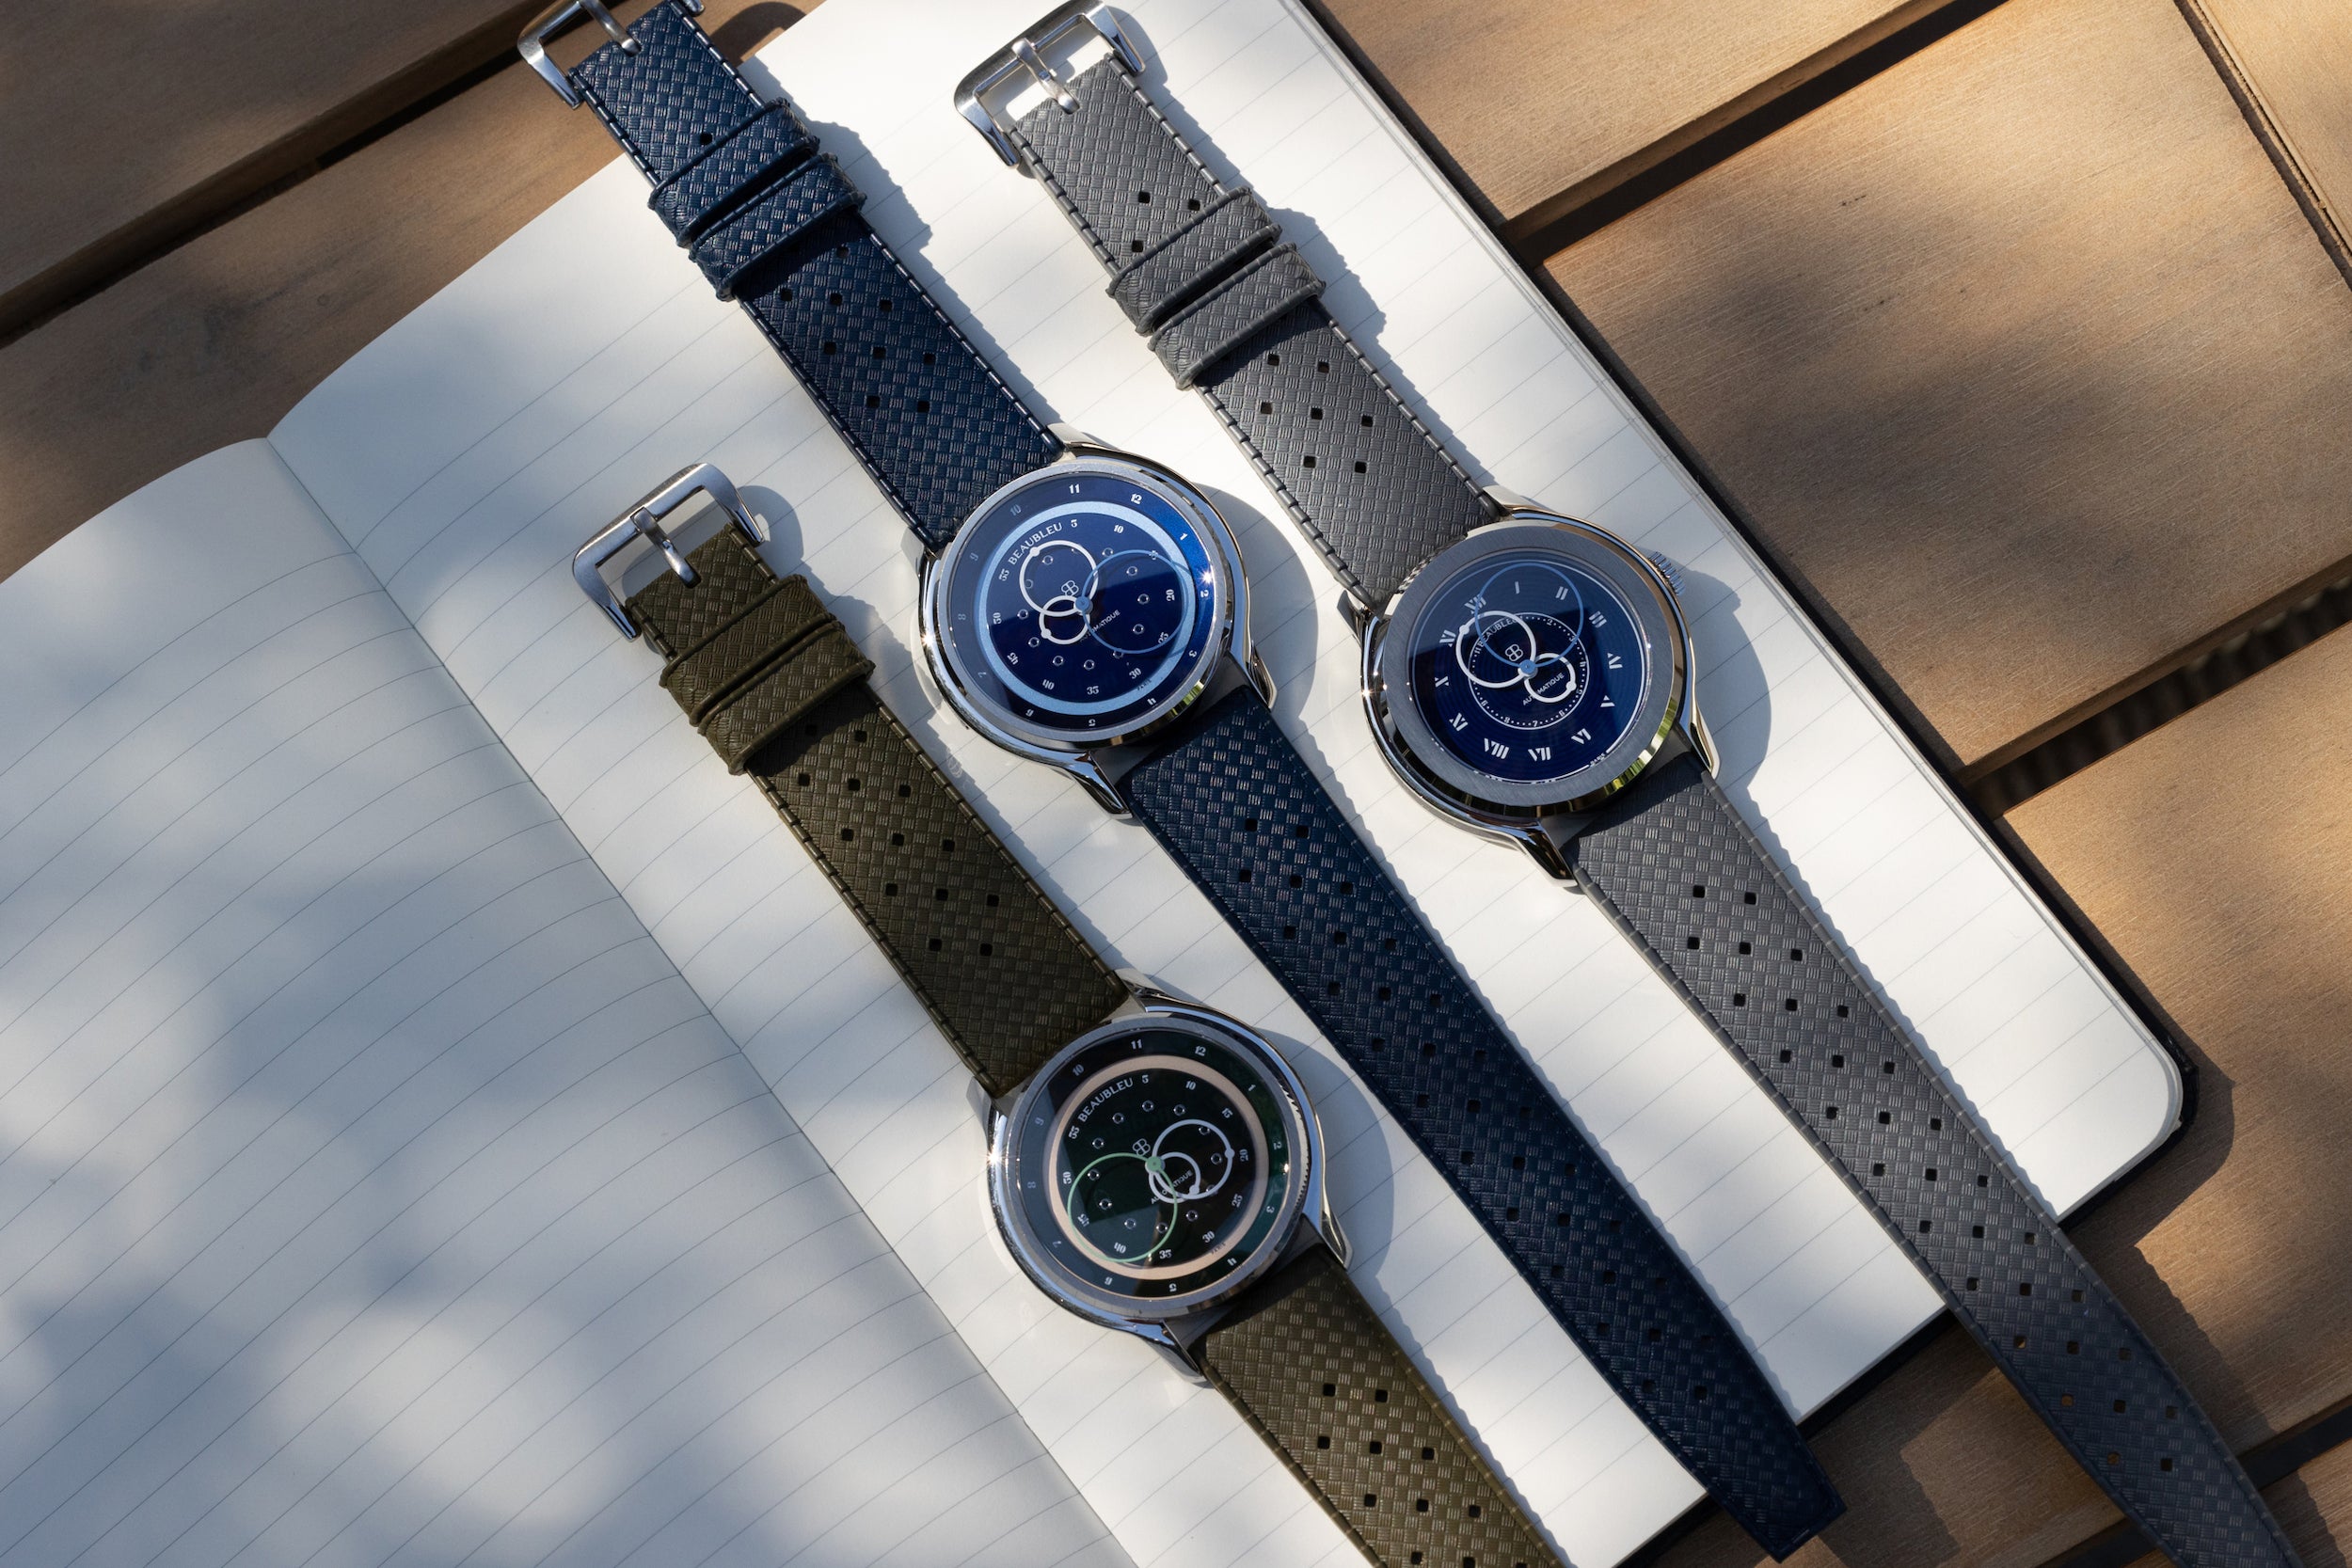 Trois montres Beaubleu : GMT Verte, GMT Bleue et Origine Bleue, avec bracelet tropic, posées sur un carnet.